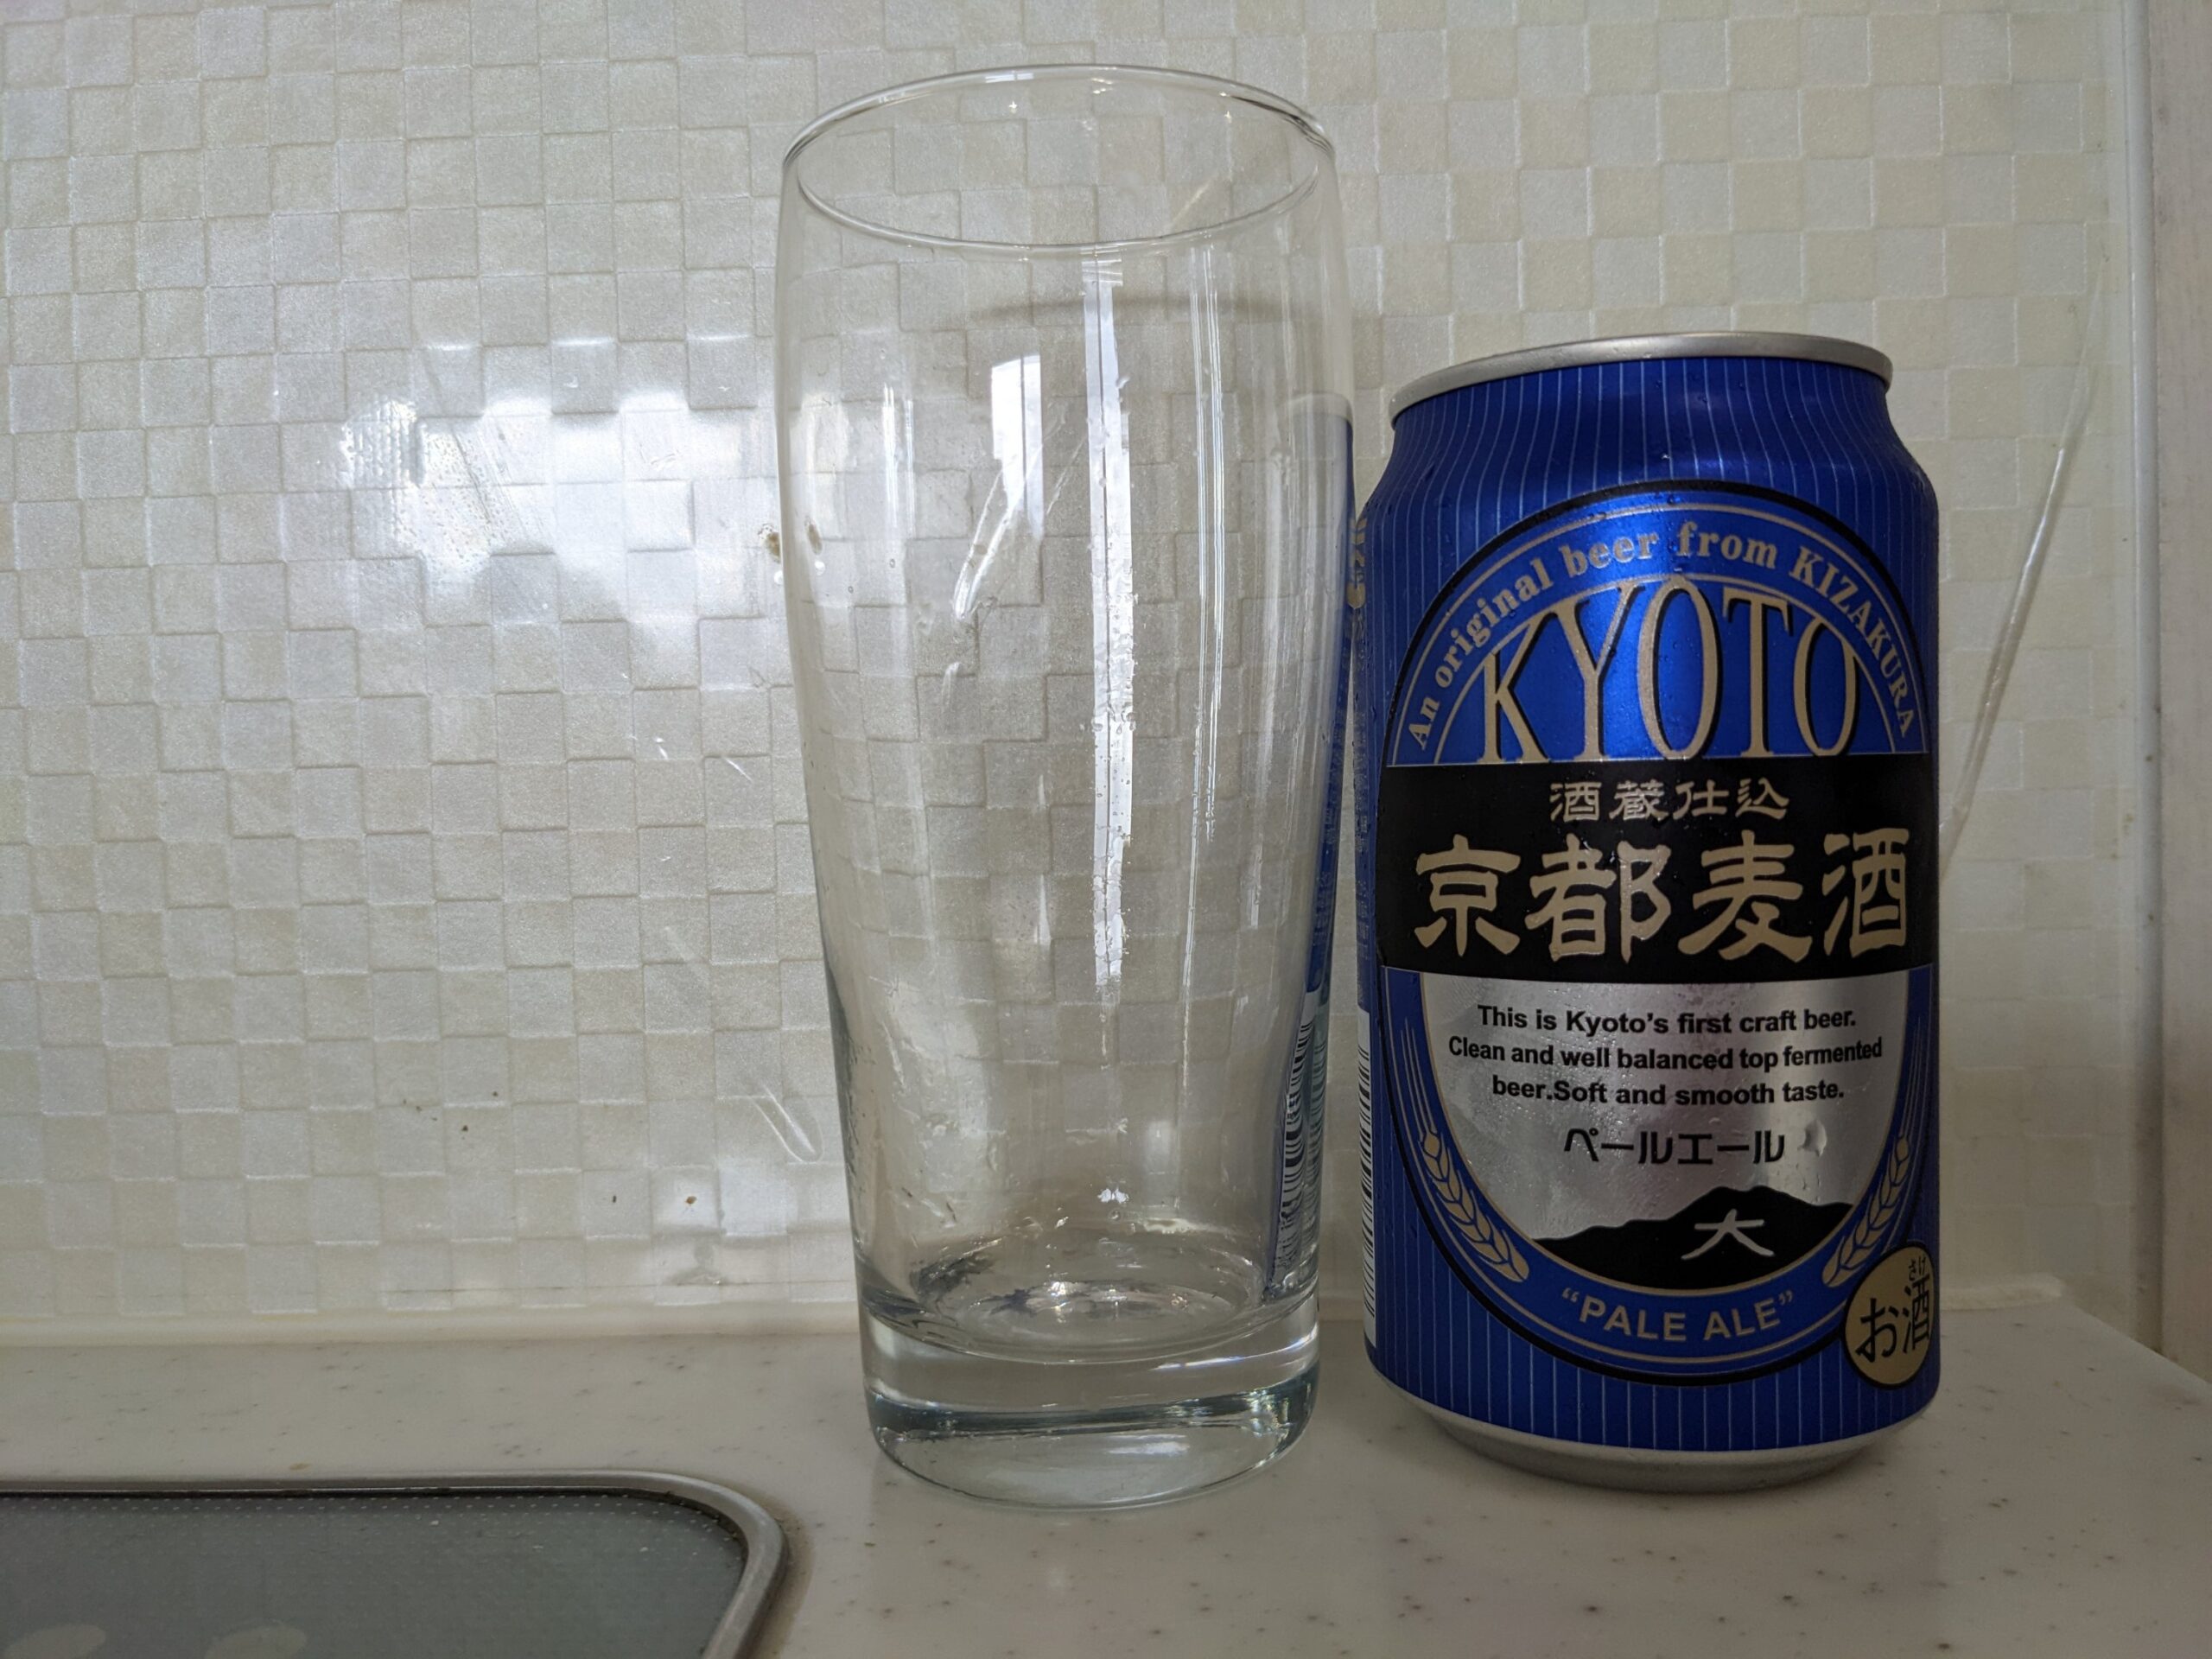 グラスと缶の「京都麦酒ペールエール」